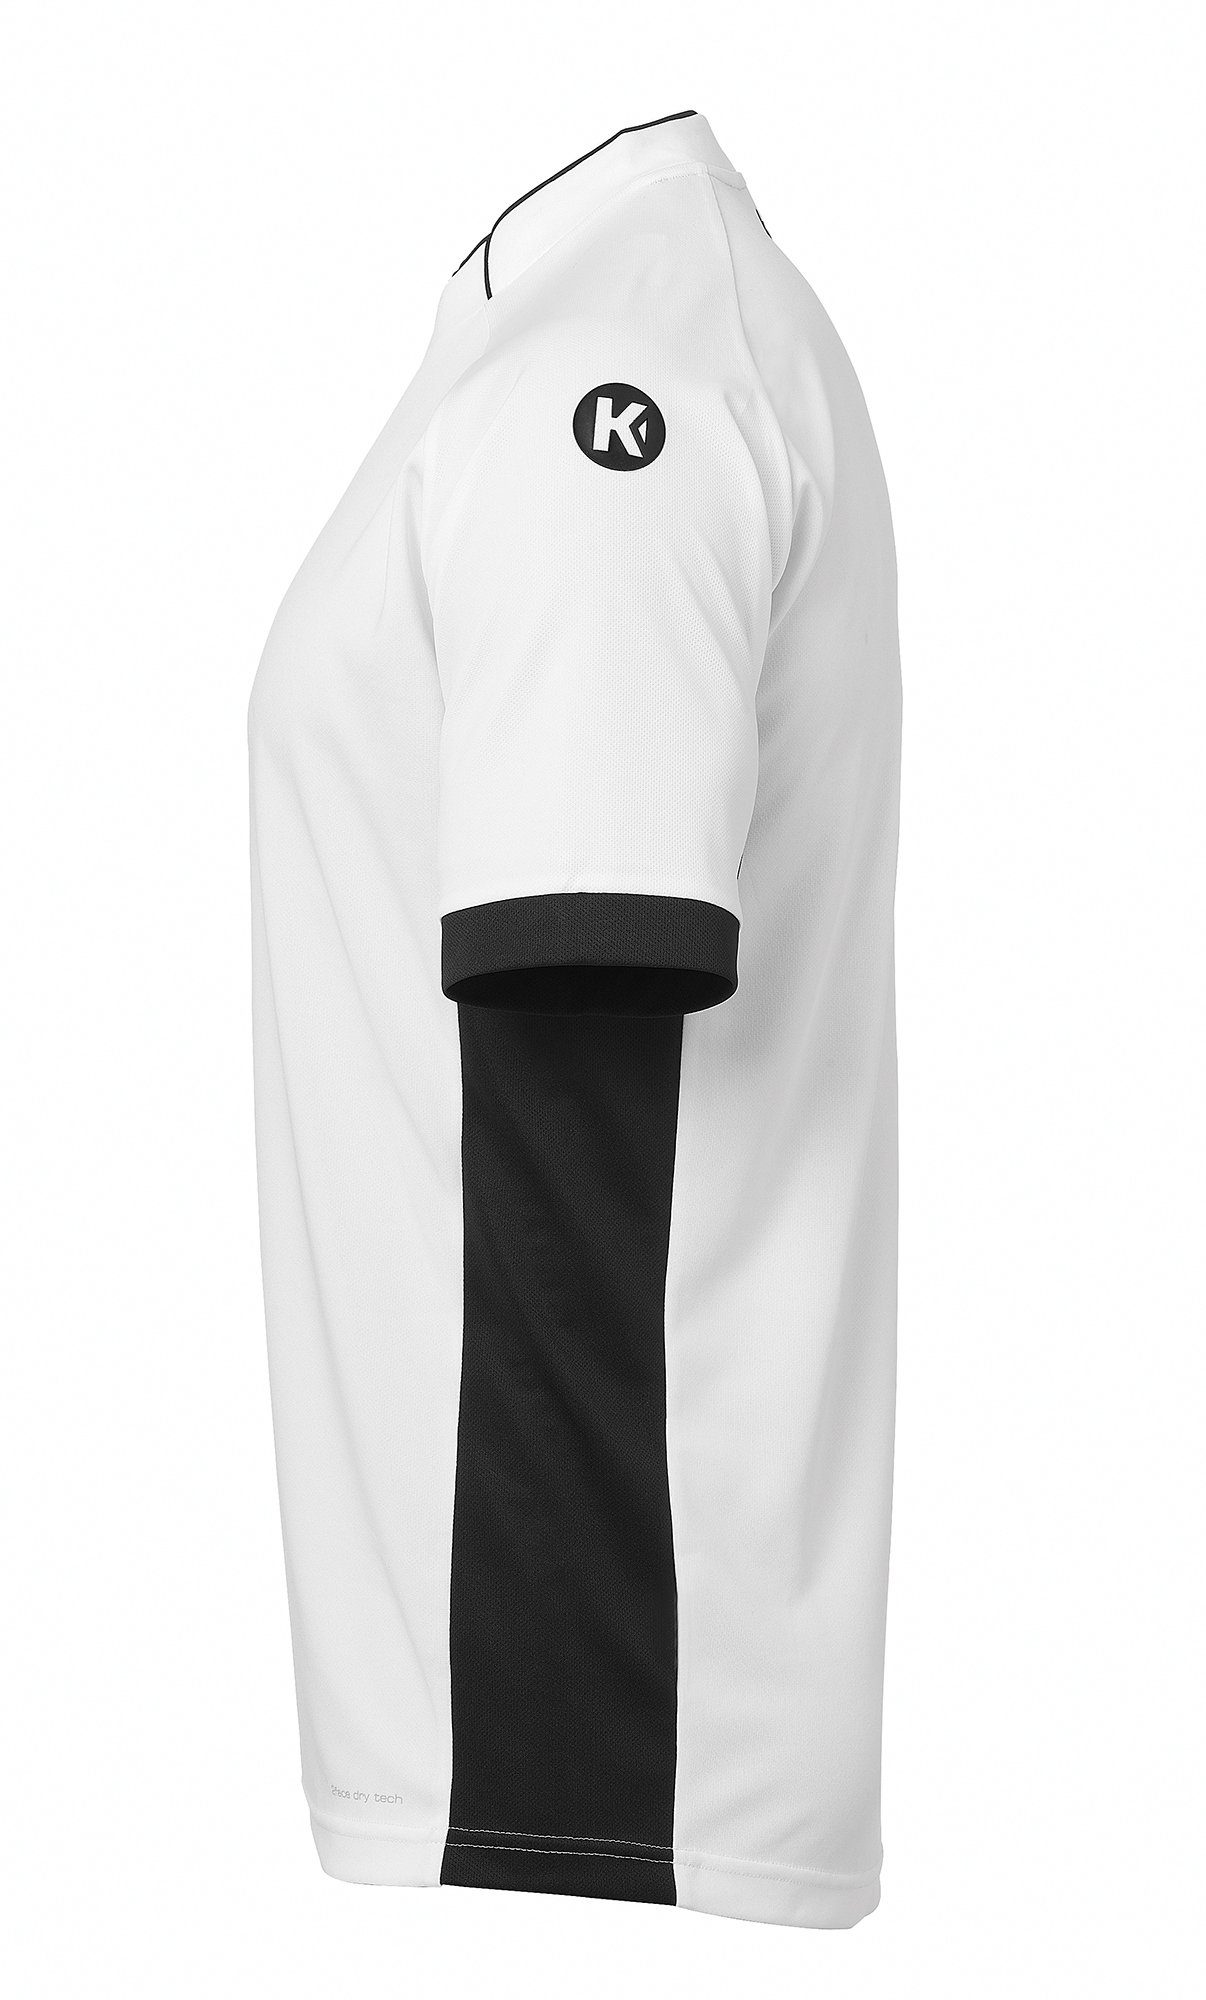 Kempa PRIME weiß/schwarz TRIKOT Trainingsshirt Shirt schnelltrocknend Kempa